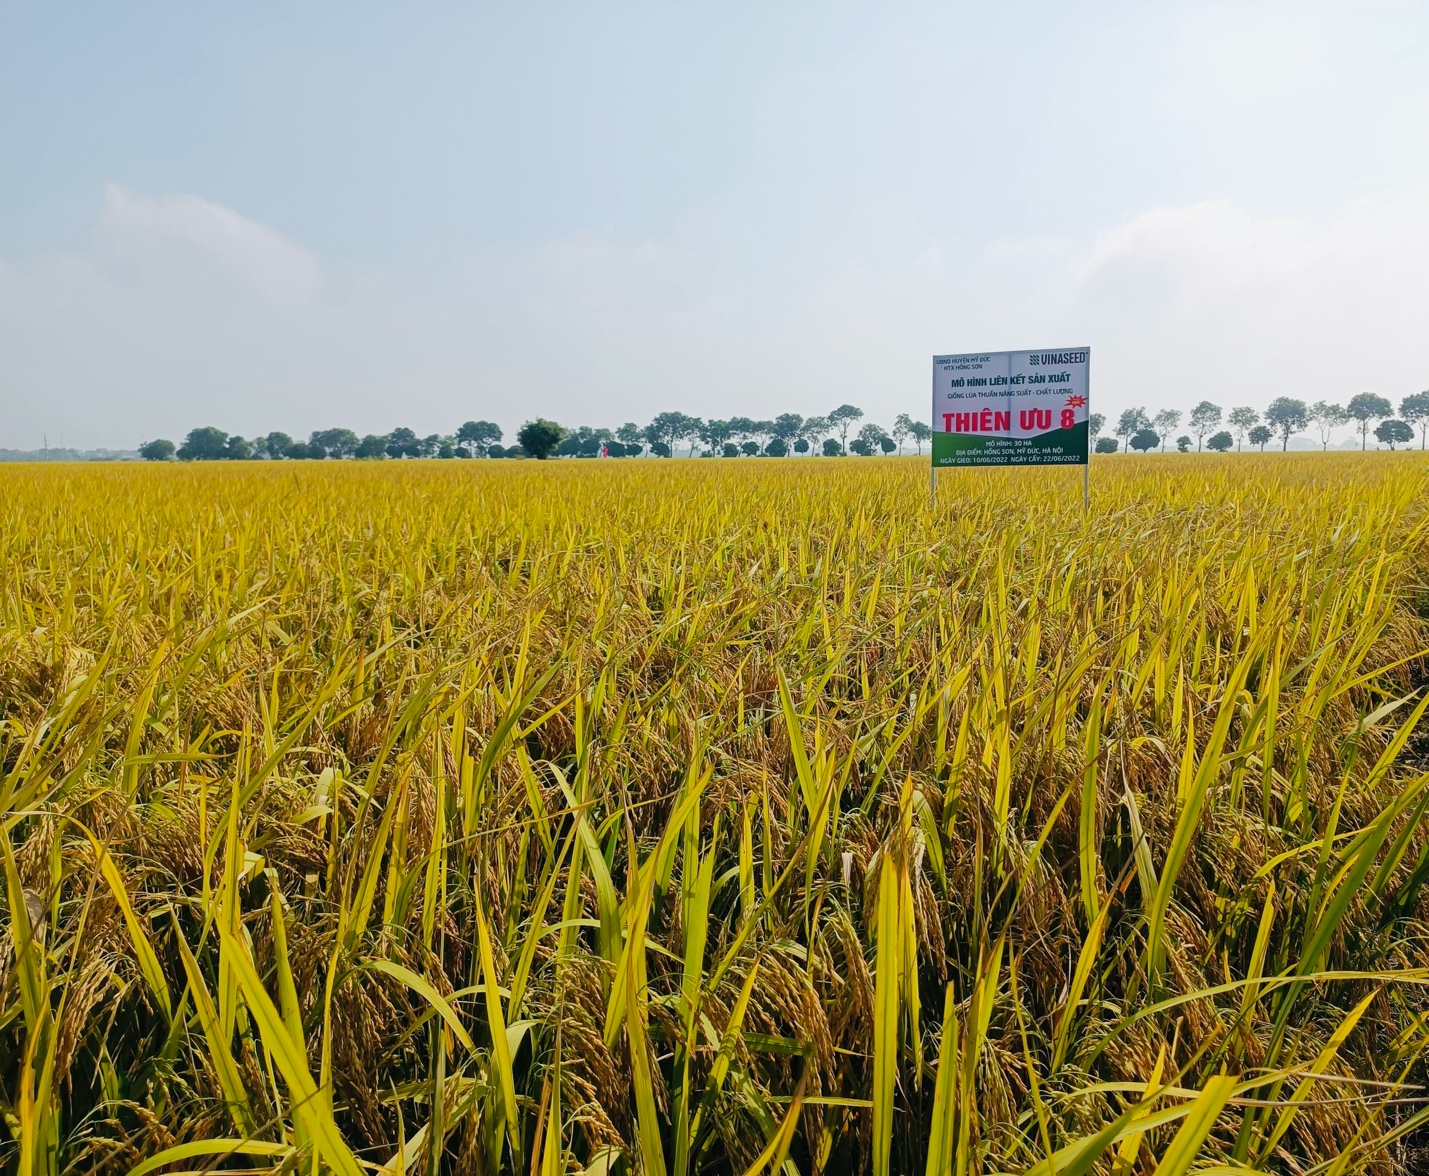 Mô hình sản xuất giống lúa Thiên ưu 8 có gì đặc biệt mà nông dân Hà Nội đề nghị mở rộng diện tích - Ảnh 2.